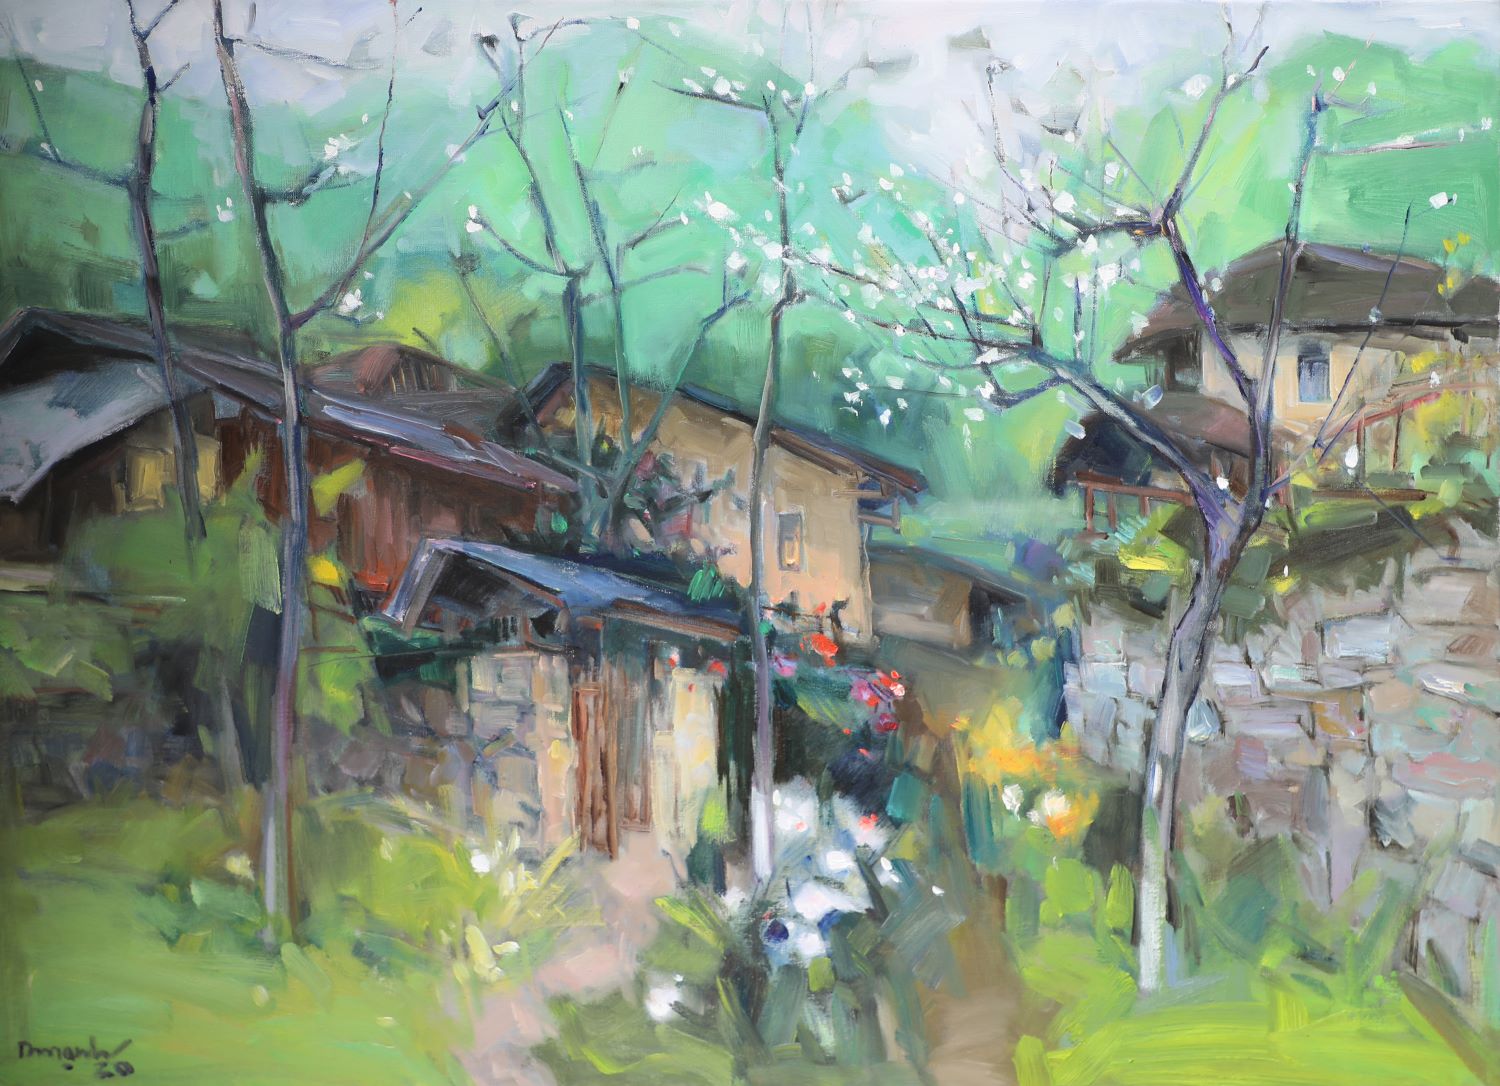 Plum Flower - Vietnamese Oil Painting Landscape by Artist Lam Duc Manh